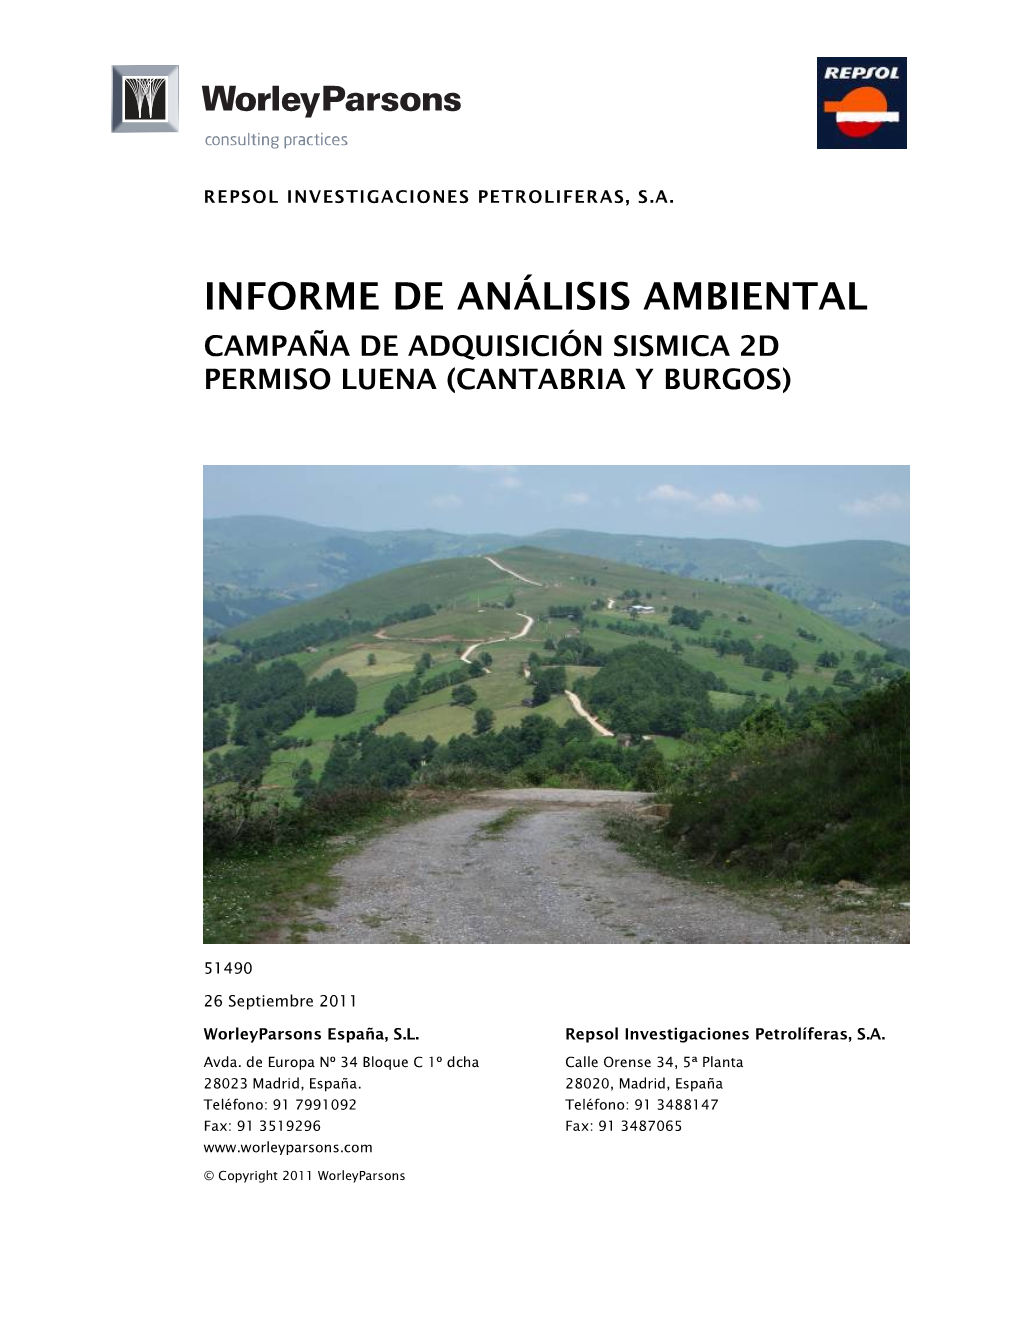 Informe De Análisis Ambiental Campaña De Adquisición Sismica 2D Permiso Luena (Cantabria Y Burgos)